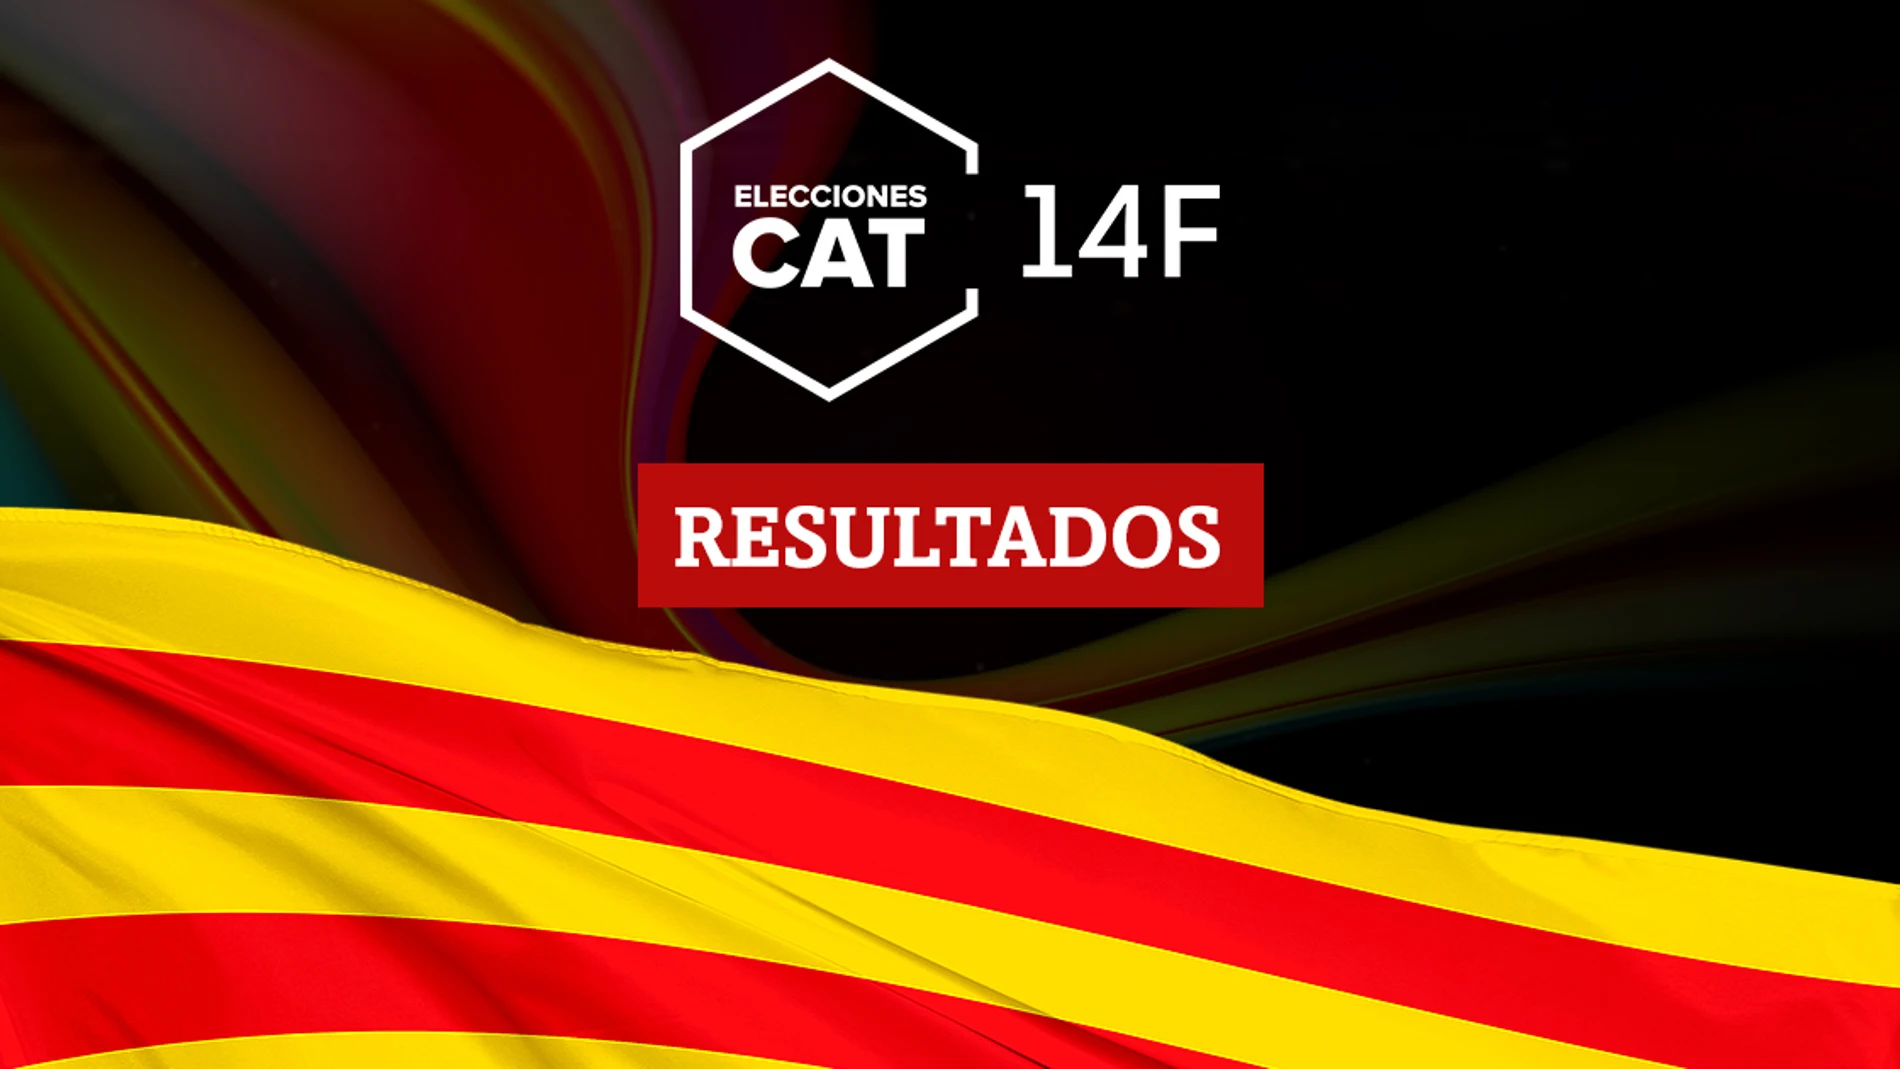 Resultados en Sant Martí Sarroca de las elecciones catalanas del 14F 2021